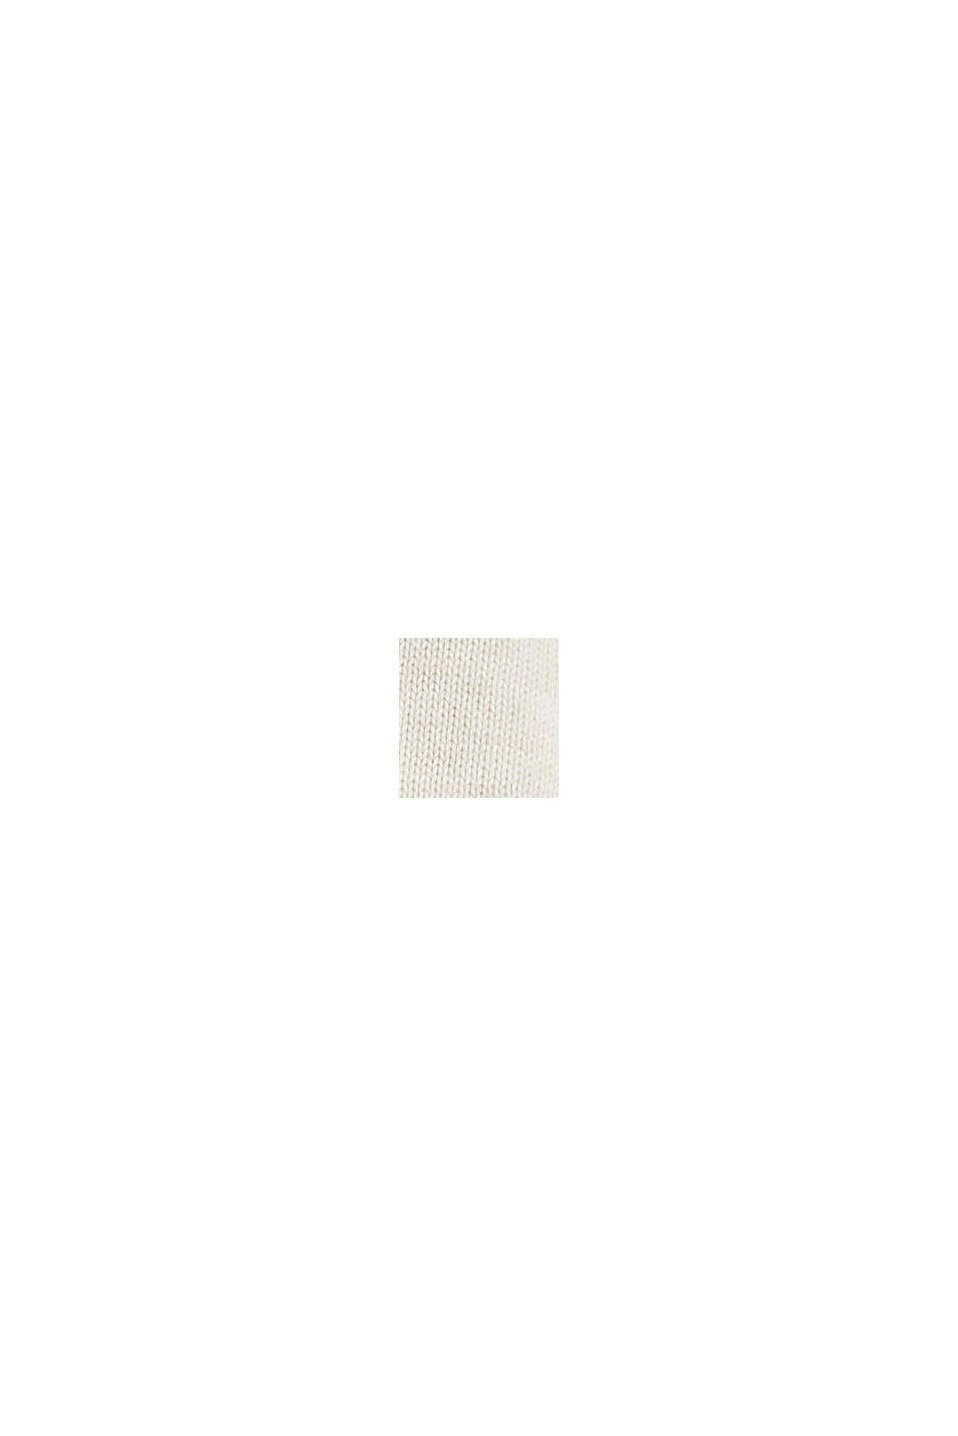 Pulovr se špičatým výstřihem, ze 100% bavlny pima, OFF WHITE, swatch